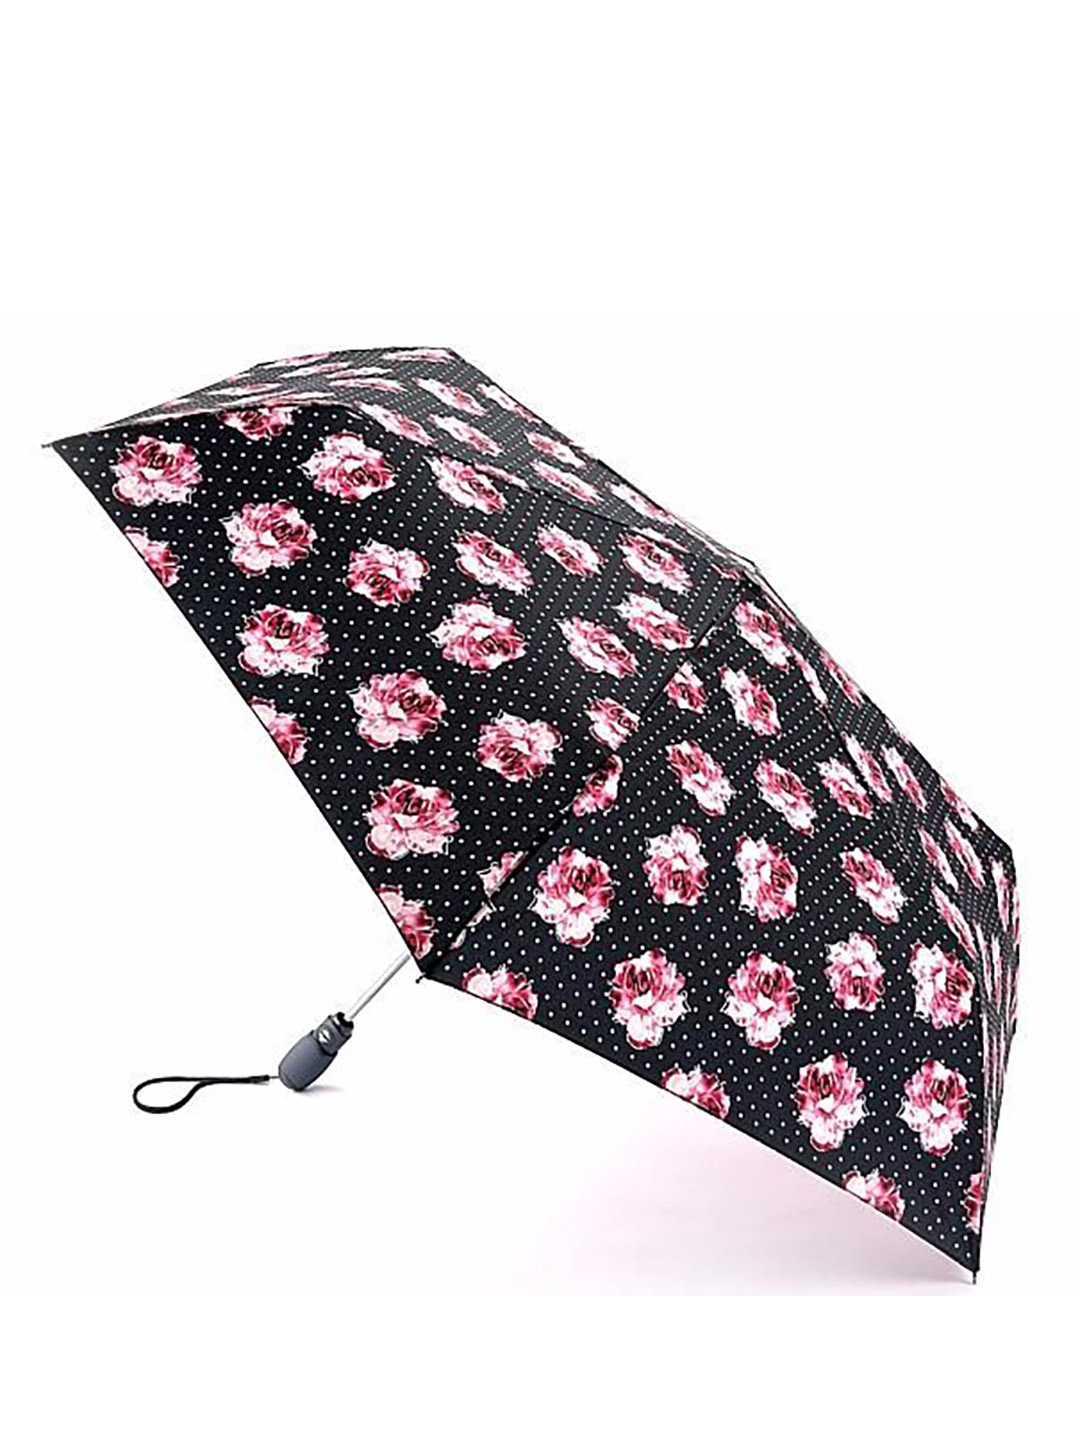 Фото Компактный женский зонт-автомат с принтом розовых роз 